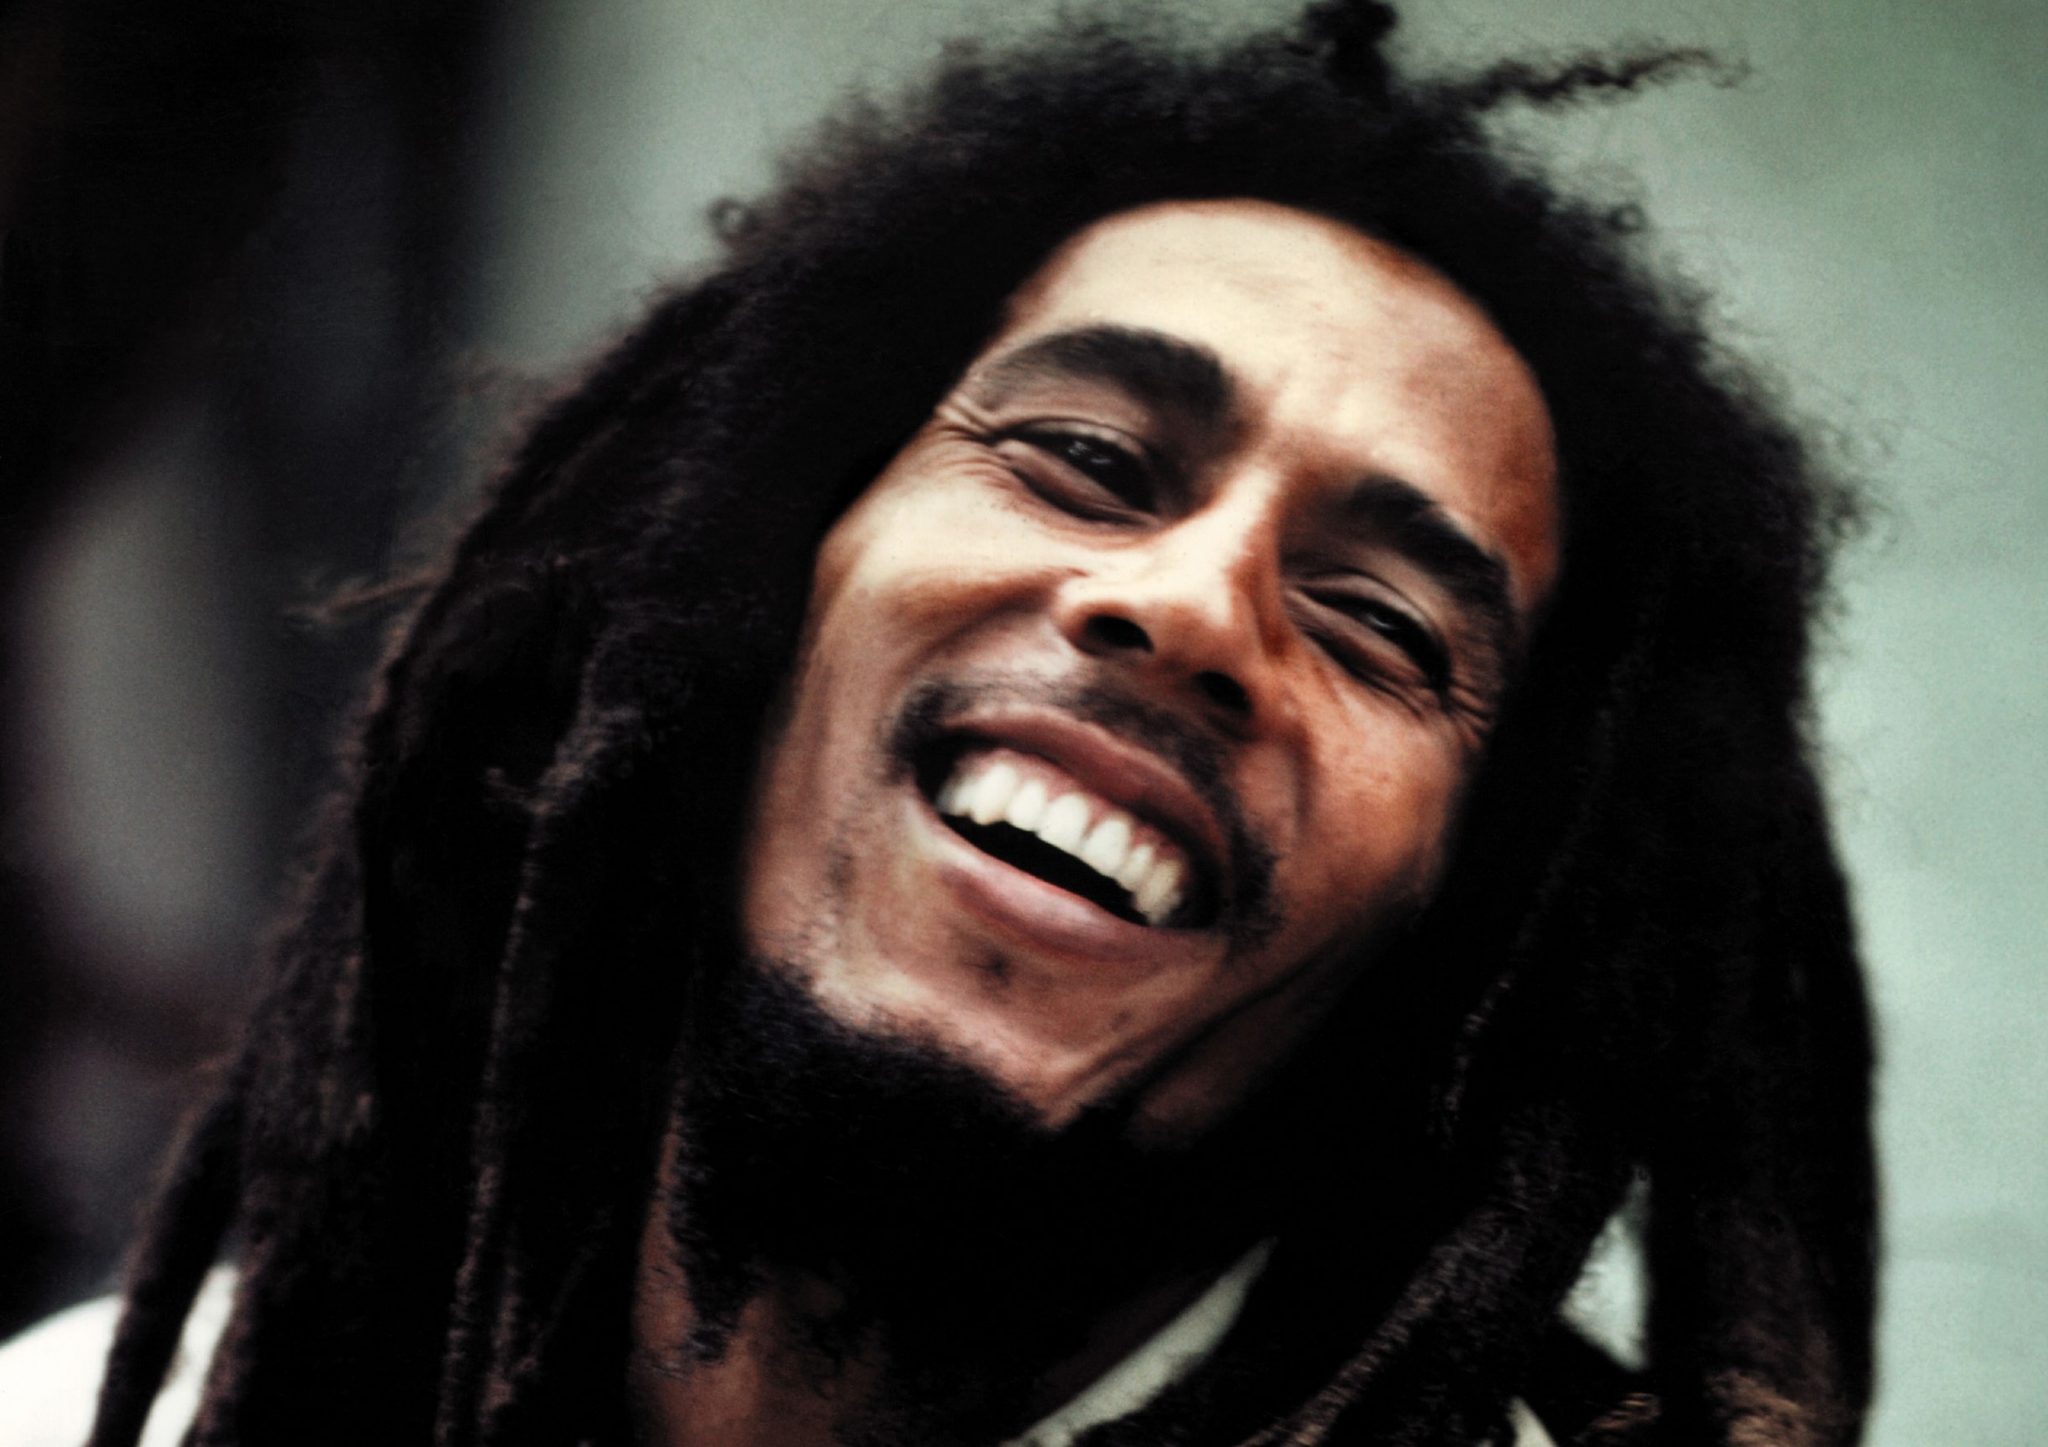 Σε δημοπρασία βγαίνουν χαμένες ηχογραφήσεις του Bob Marley